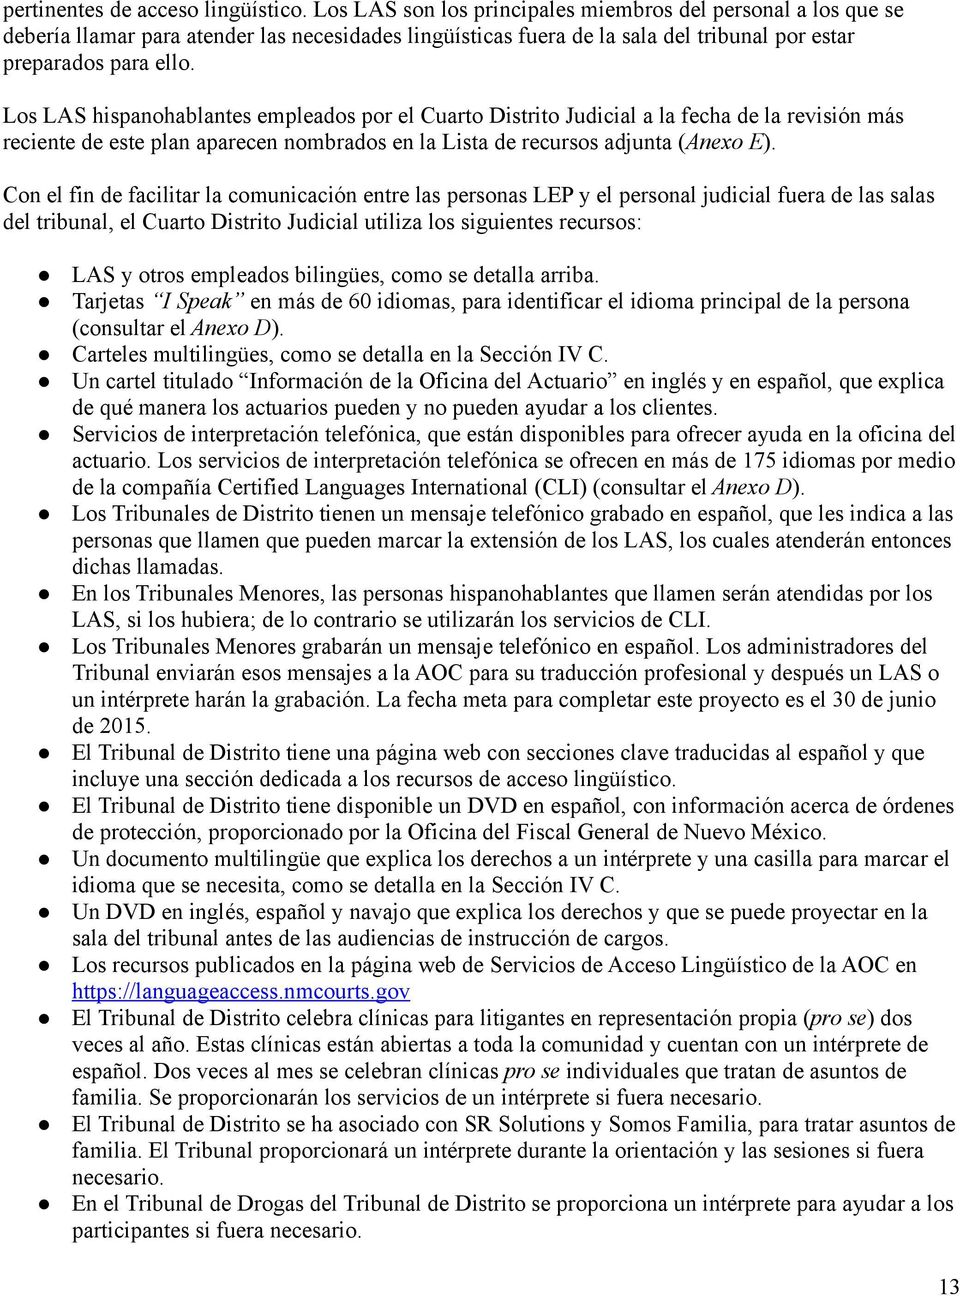 Los LAS hispanohablantes empleados por el Cuarto Distrito Judicial a la fecha de la revisión más reciente de este plan aparecen nombrados en la Lista de recursos adjunta (Anexo E).